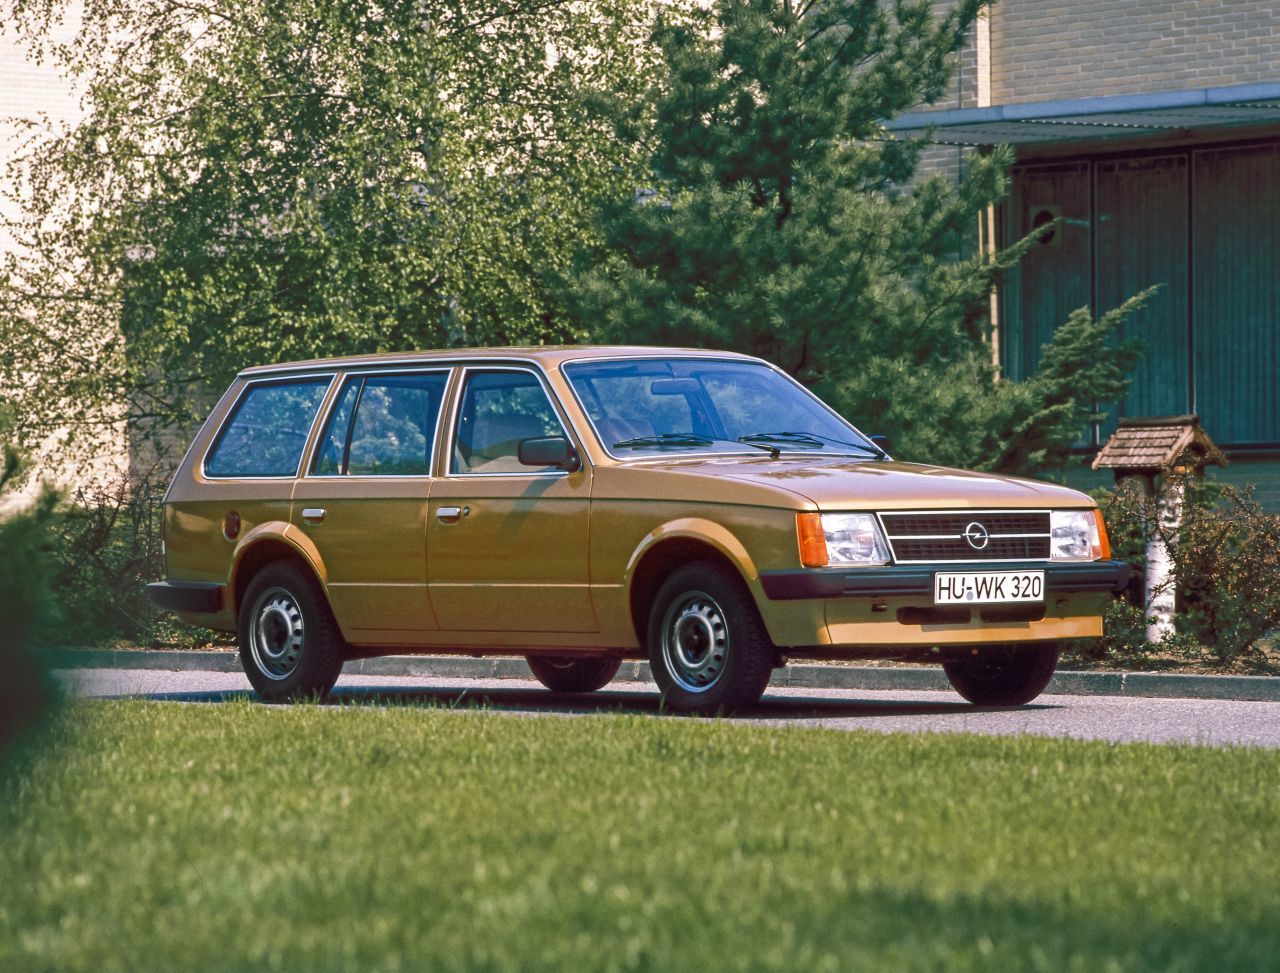 1979 – Opel Kadett D:  Ein Jahr nach dem Senator A steht wieder ein Opel ganz oben auf dem Treppchen. Der Kadett D – erstmals ein Opel mit Frontantrieb in der Kompaktklasse – holt das „Goldene Lenkrad“ Nummer 2. Dank der quer eingebauten Motoren und der fehlenden Kardanwelle bietet der neue Kadett den Passagieren viel Raum auf kompakter Fläche – und dies, obwohl der 1979er Kadett 126 Millimeter kürzer als sein heckgetriebener Vorgänger ist. Neben dem Kombi gibt es zwei Fließheck-Limousinen.